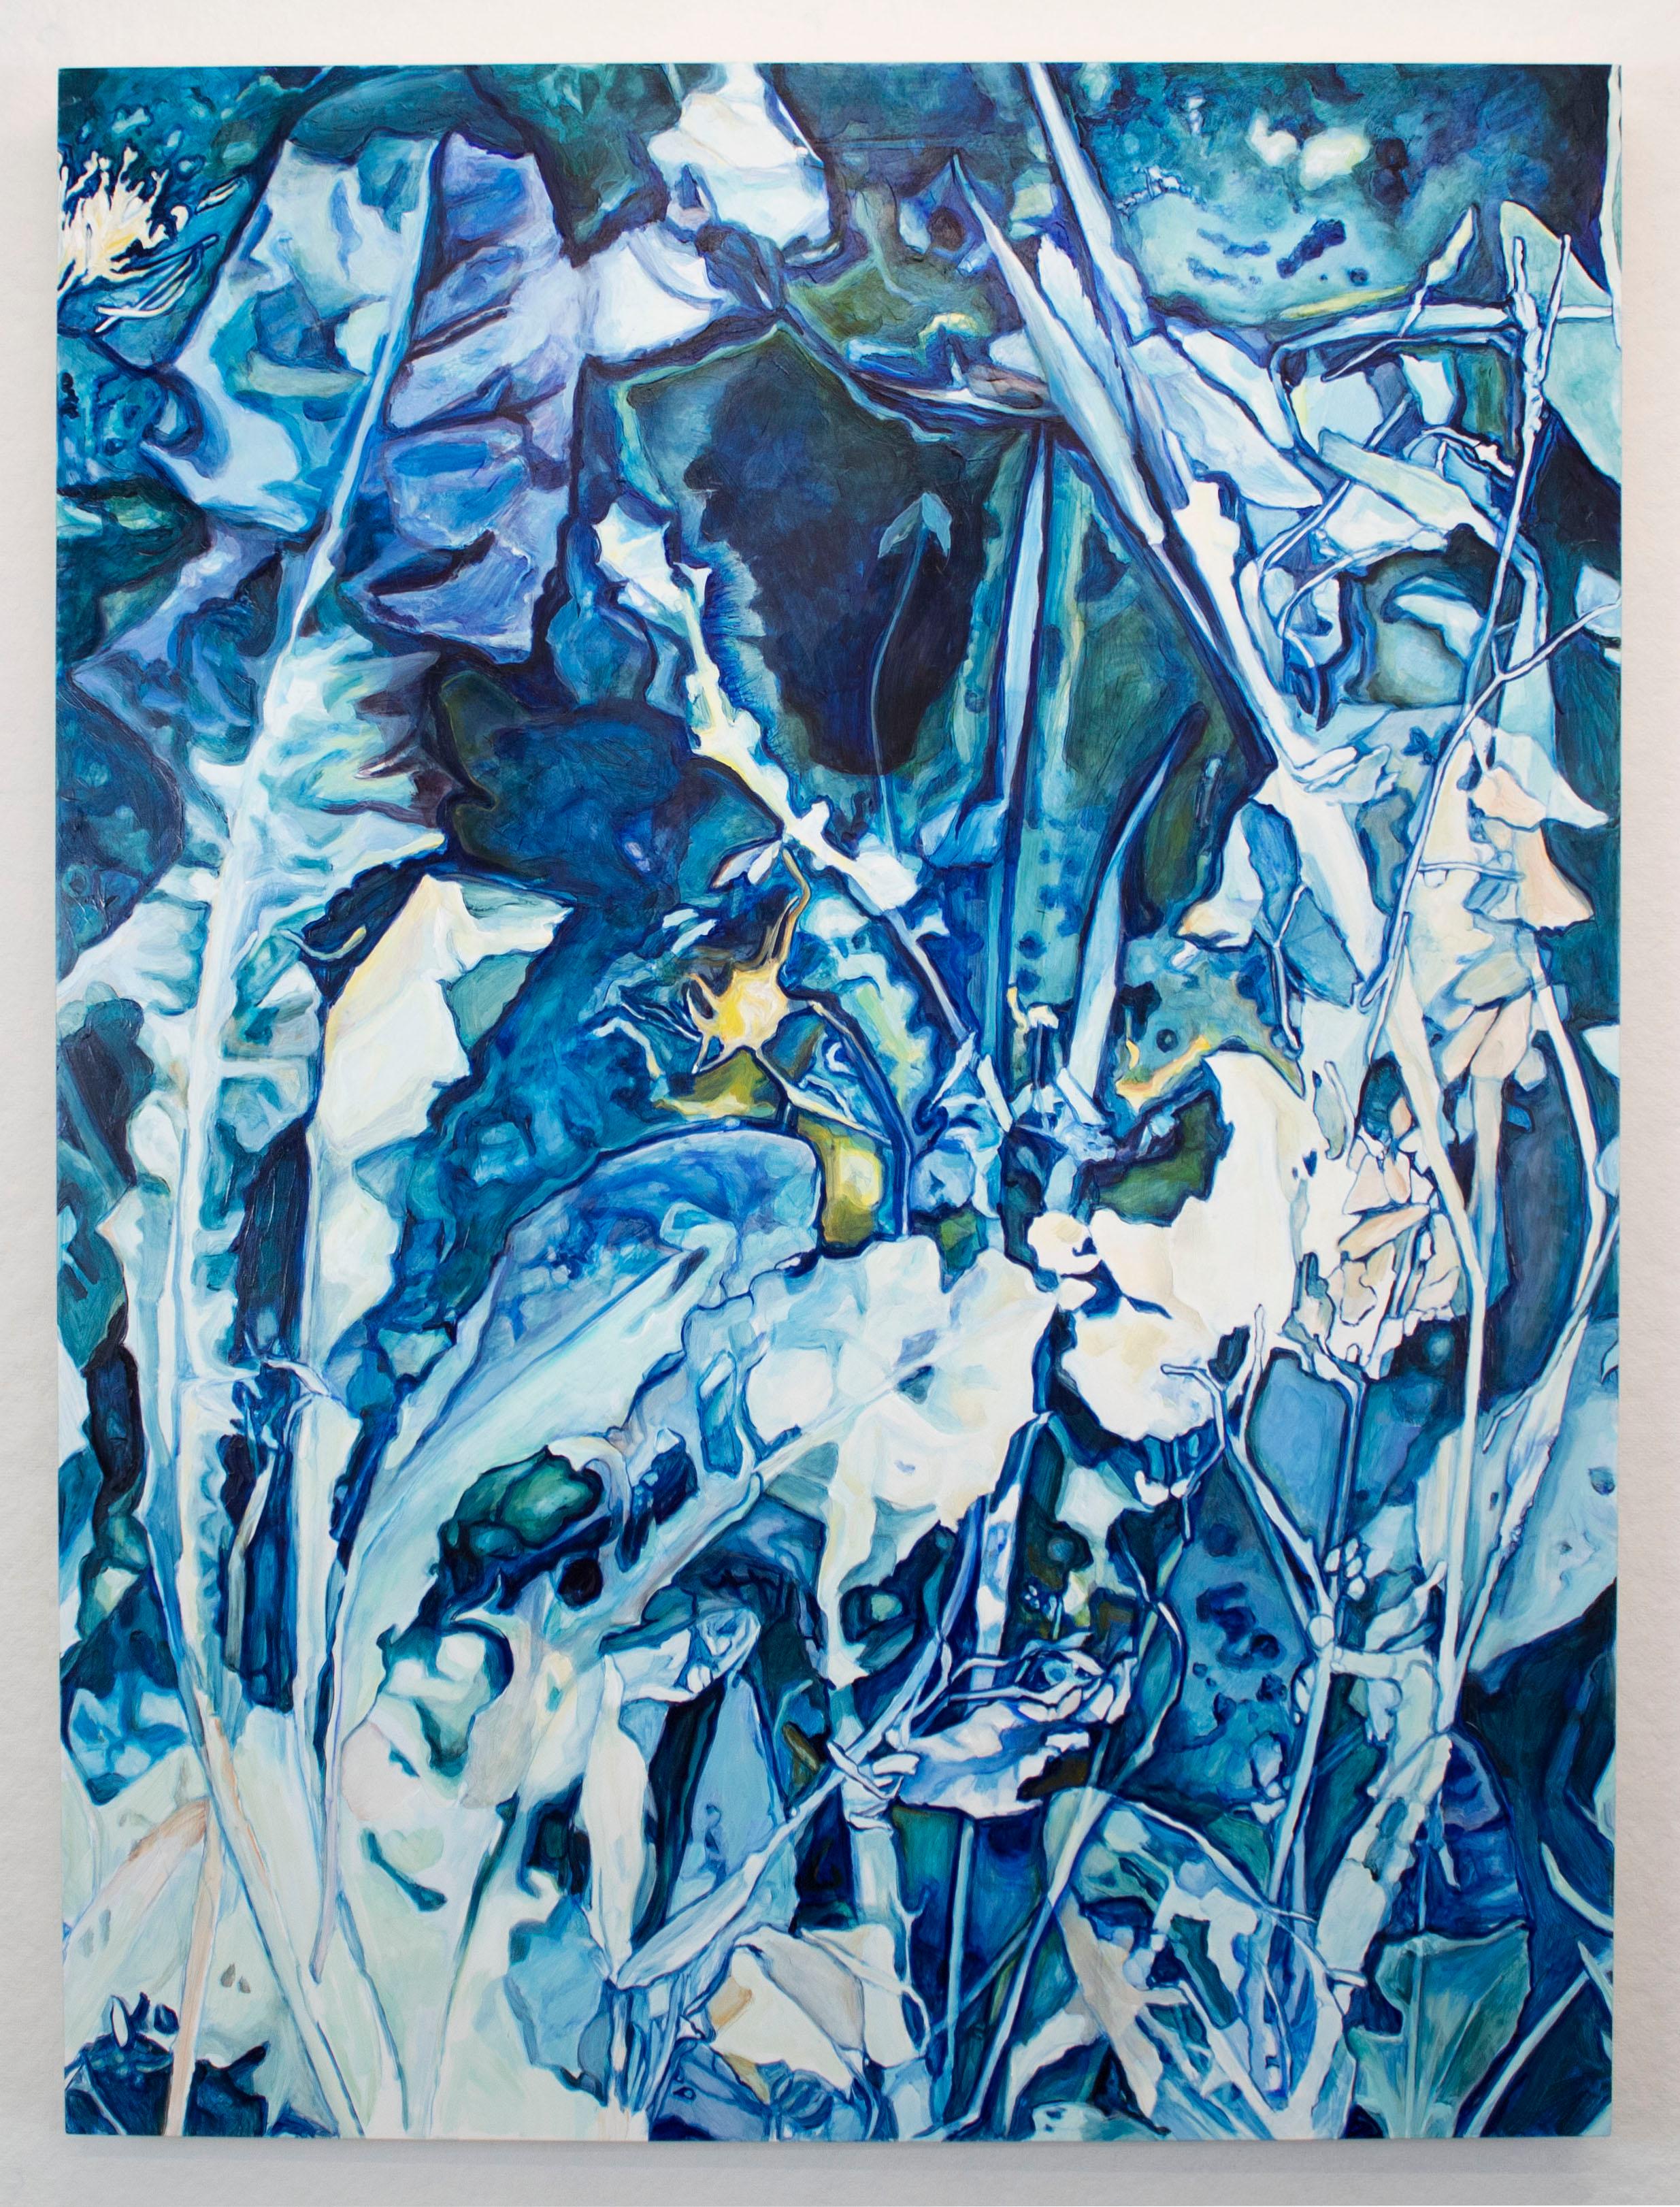 Diptyque inspiré du cyanotype, composé de plantes bleues et blanches luxuriantes, entrecoupées de brins de jaune. Electric Daydream, Diptyque (2022) par Amanda Besl. Huile sur planche.